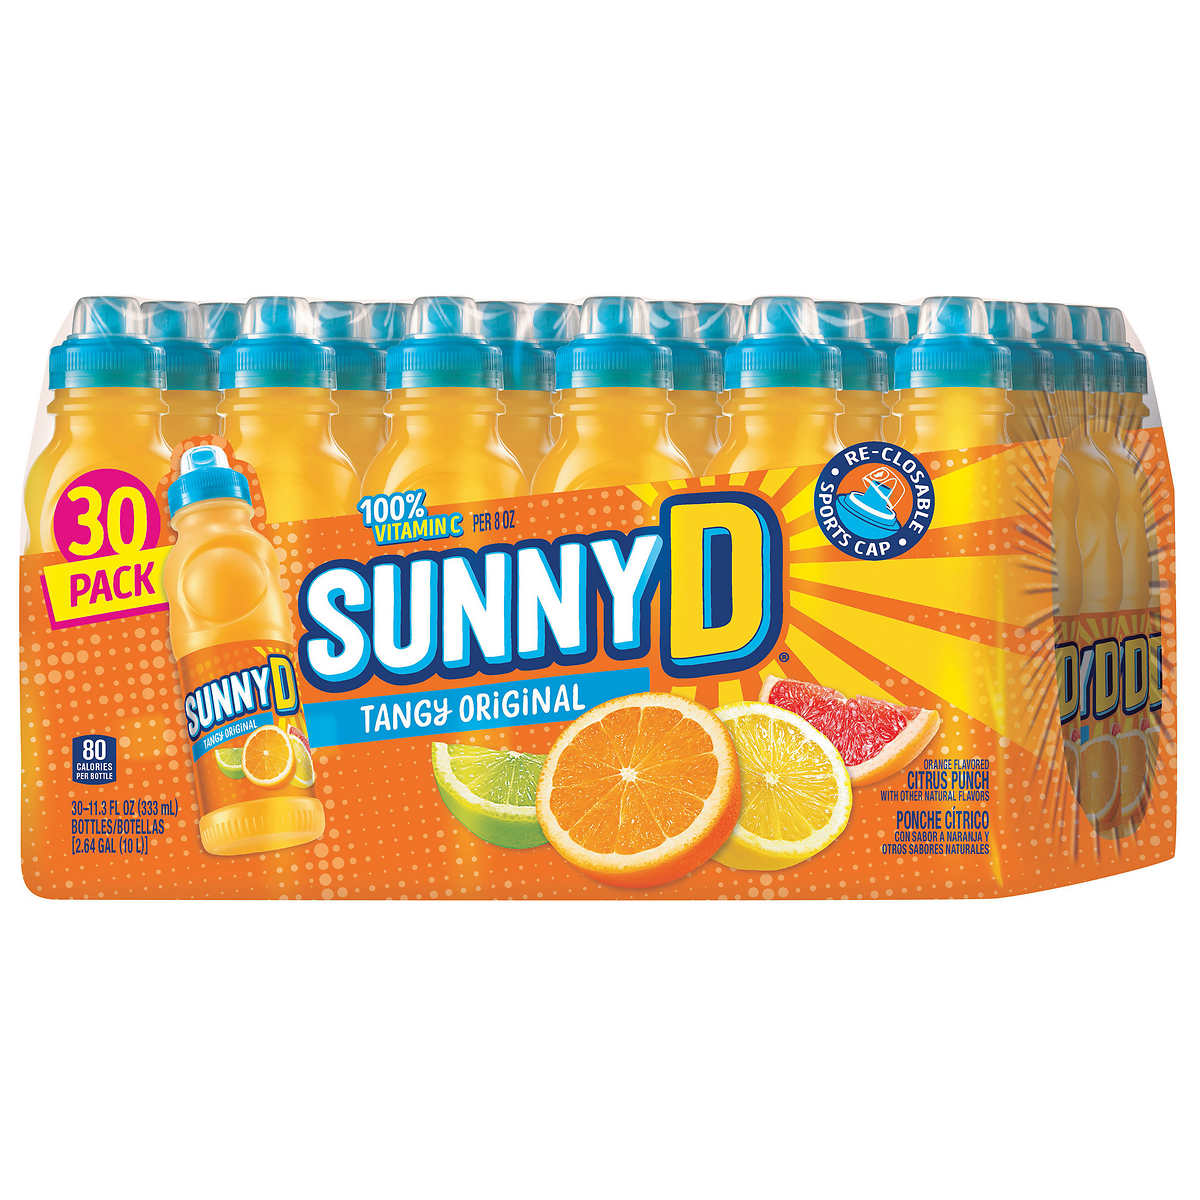 Sunny D, Tangy Original, 11.3 fl oz, 30-count